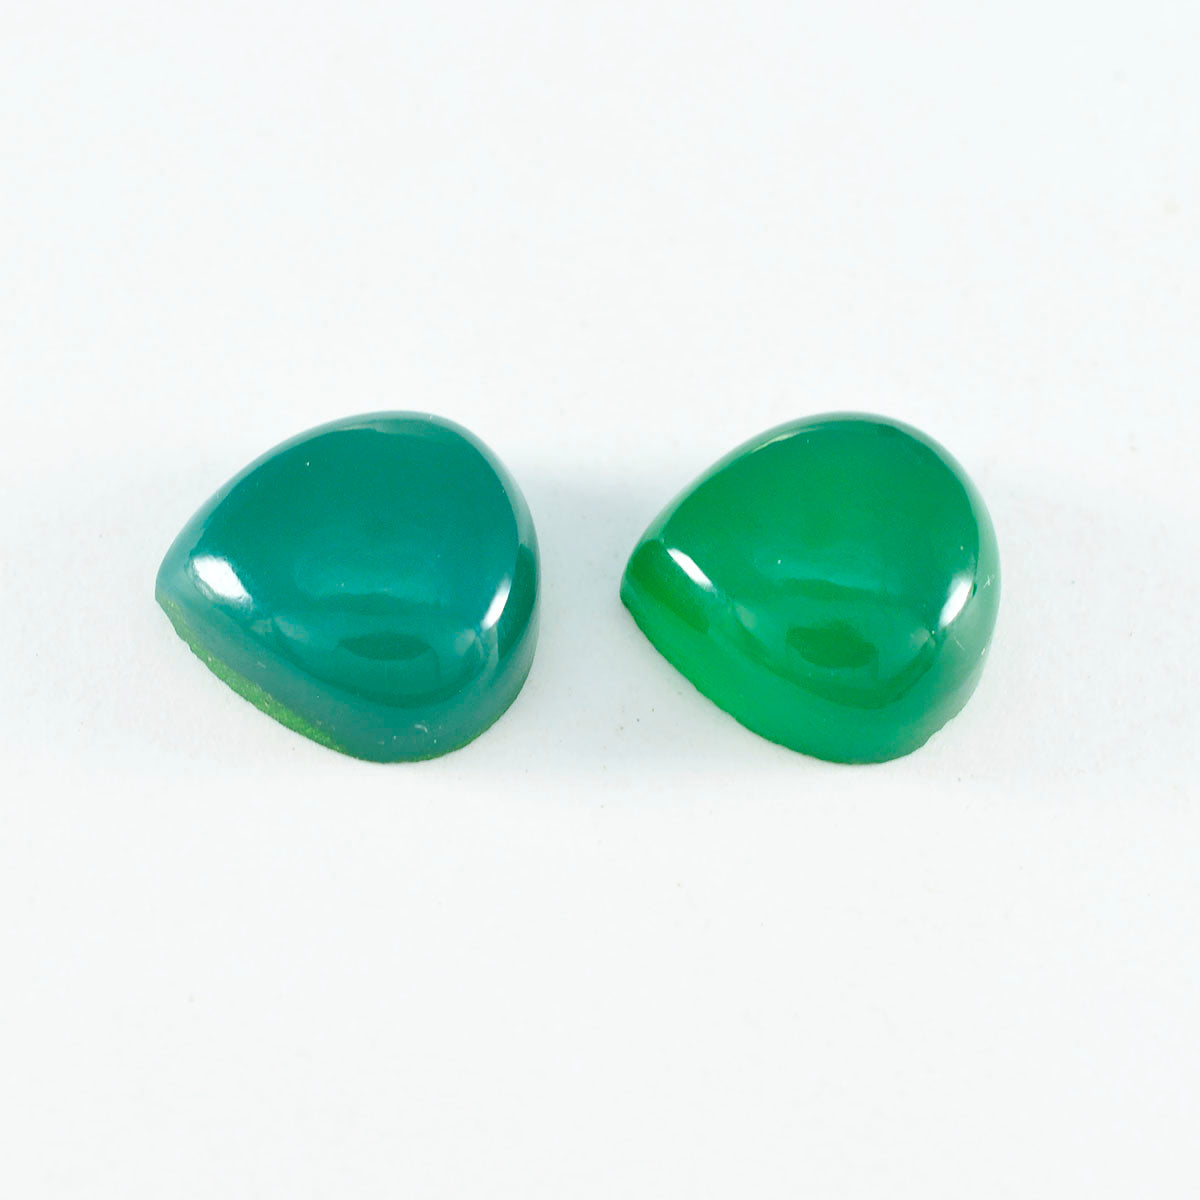 Riyogems 1PC Green Onyx Cabochon 11x11 mm Heart Shape wonderful Quality Gemstone